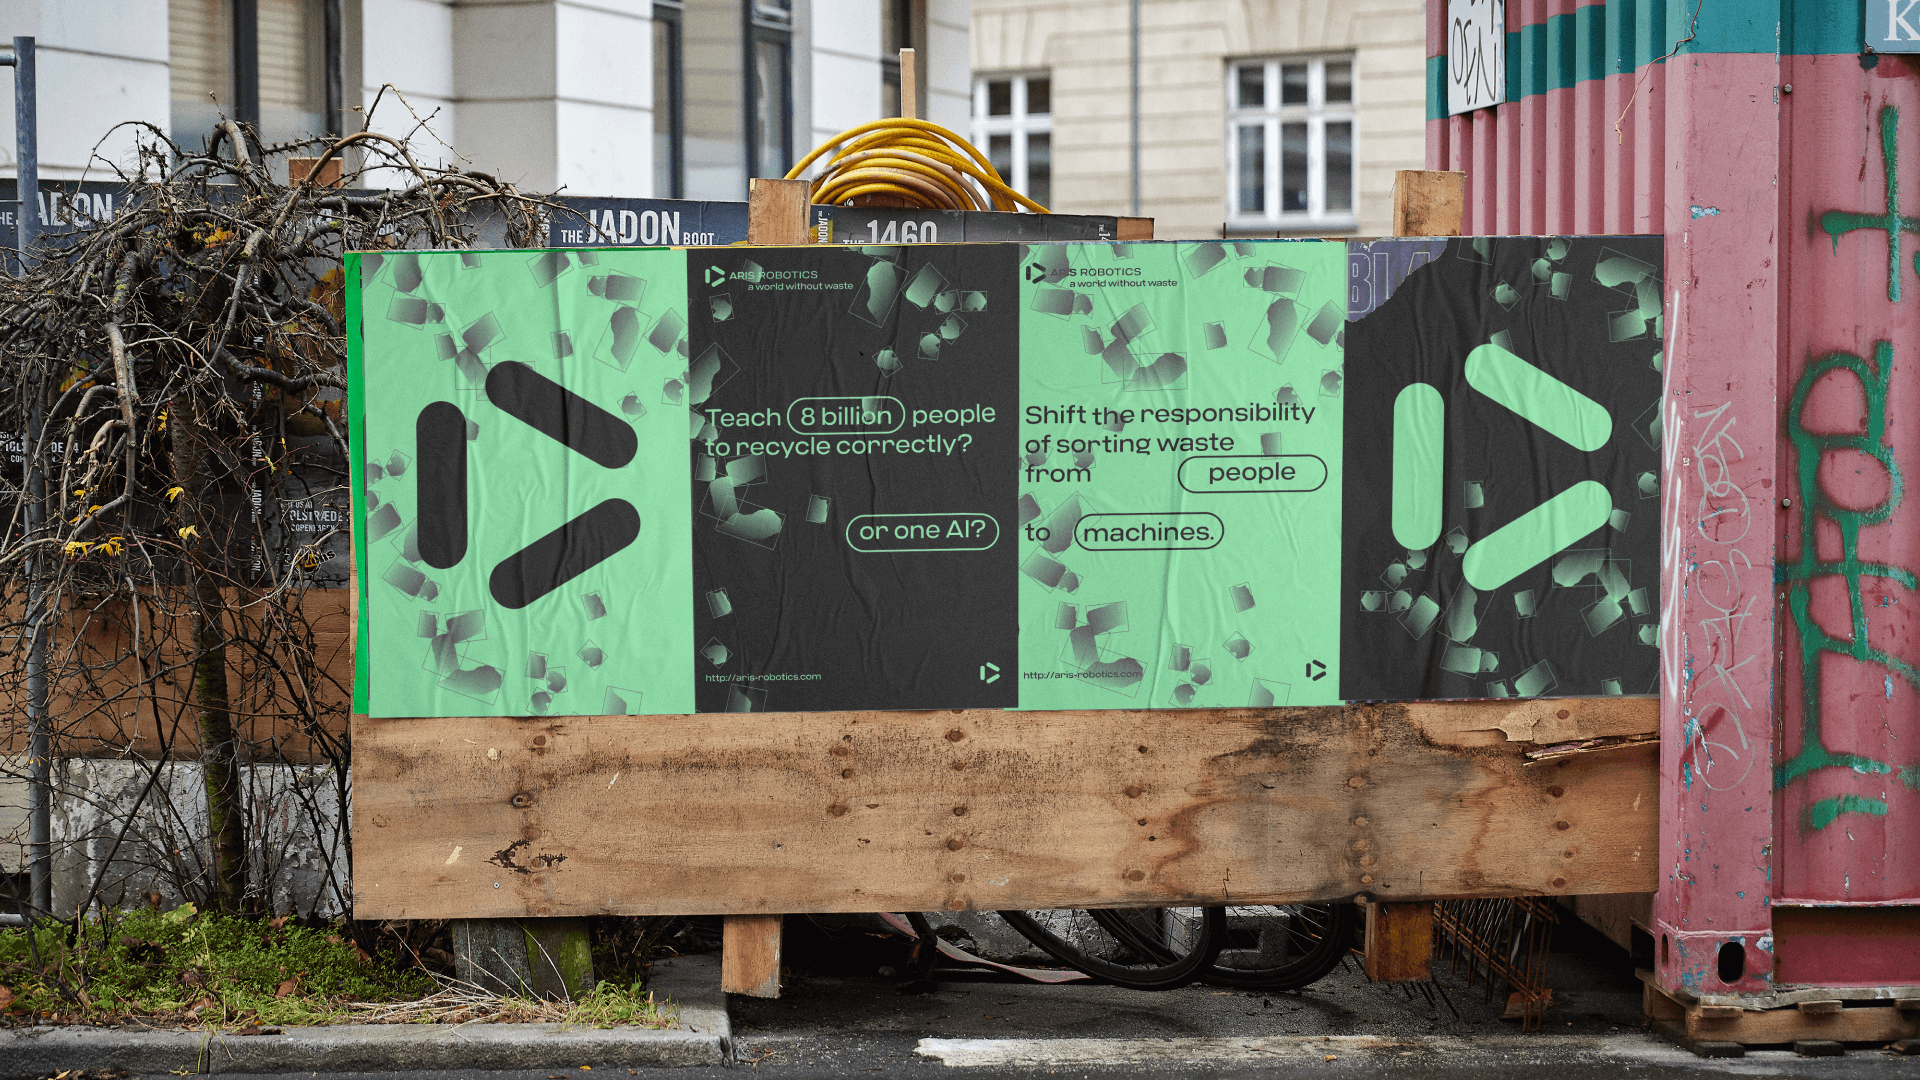 ARIS Robotics' branding deliverables spotted in Copenhagen.